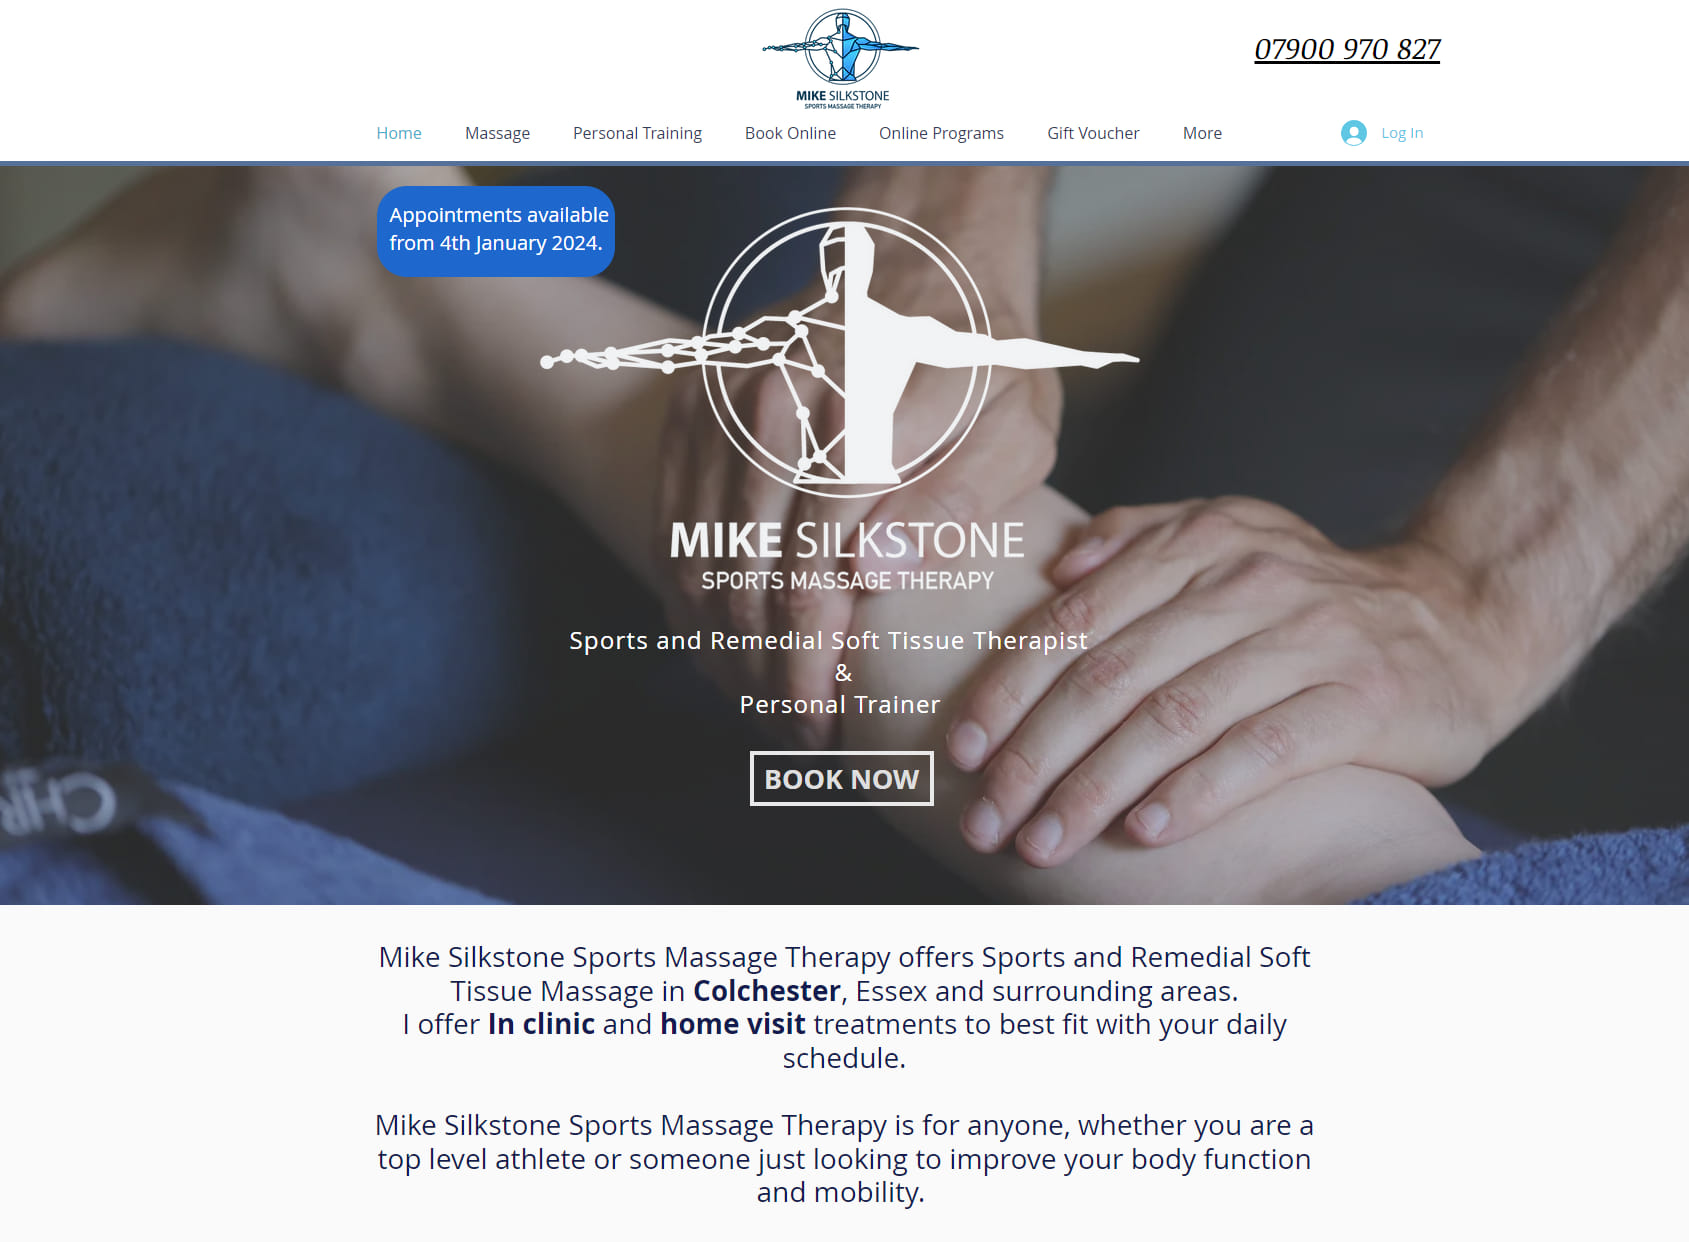 Mike Silkstone Sports Massage Therapy